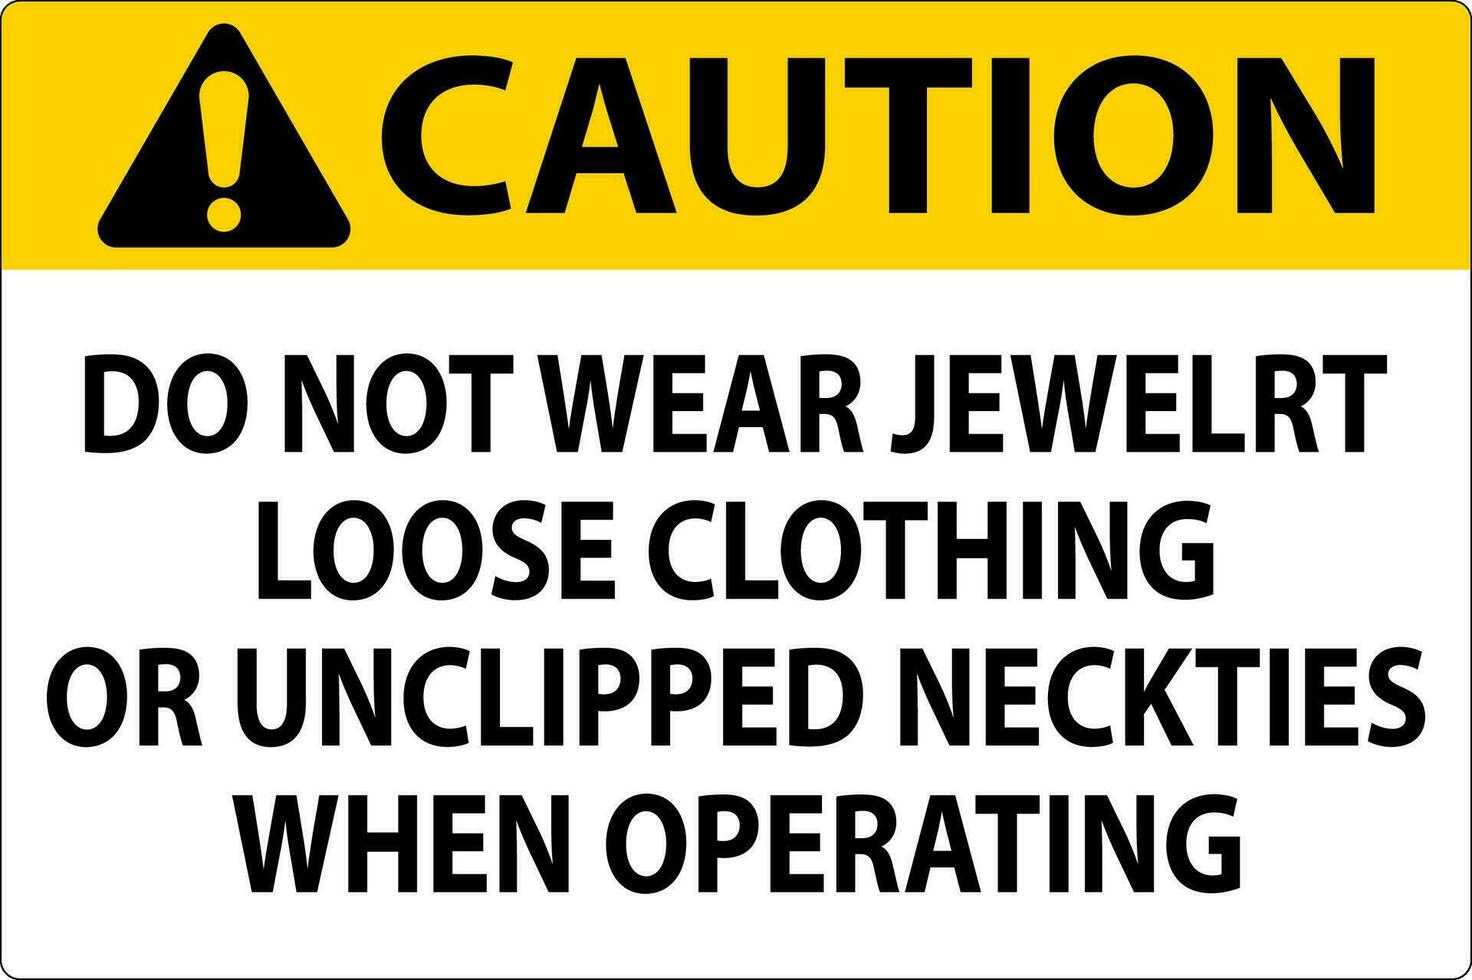 mise en garde signe faire ne pas porter bijoux, ample Vêtements ou déclipsé cravates lorsque en fonctionnement vecteur